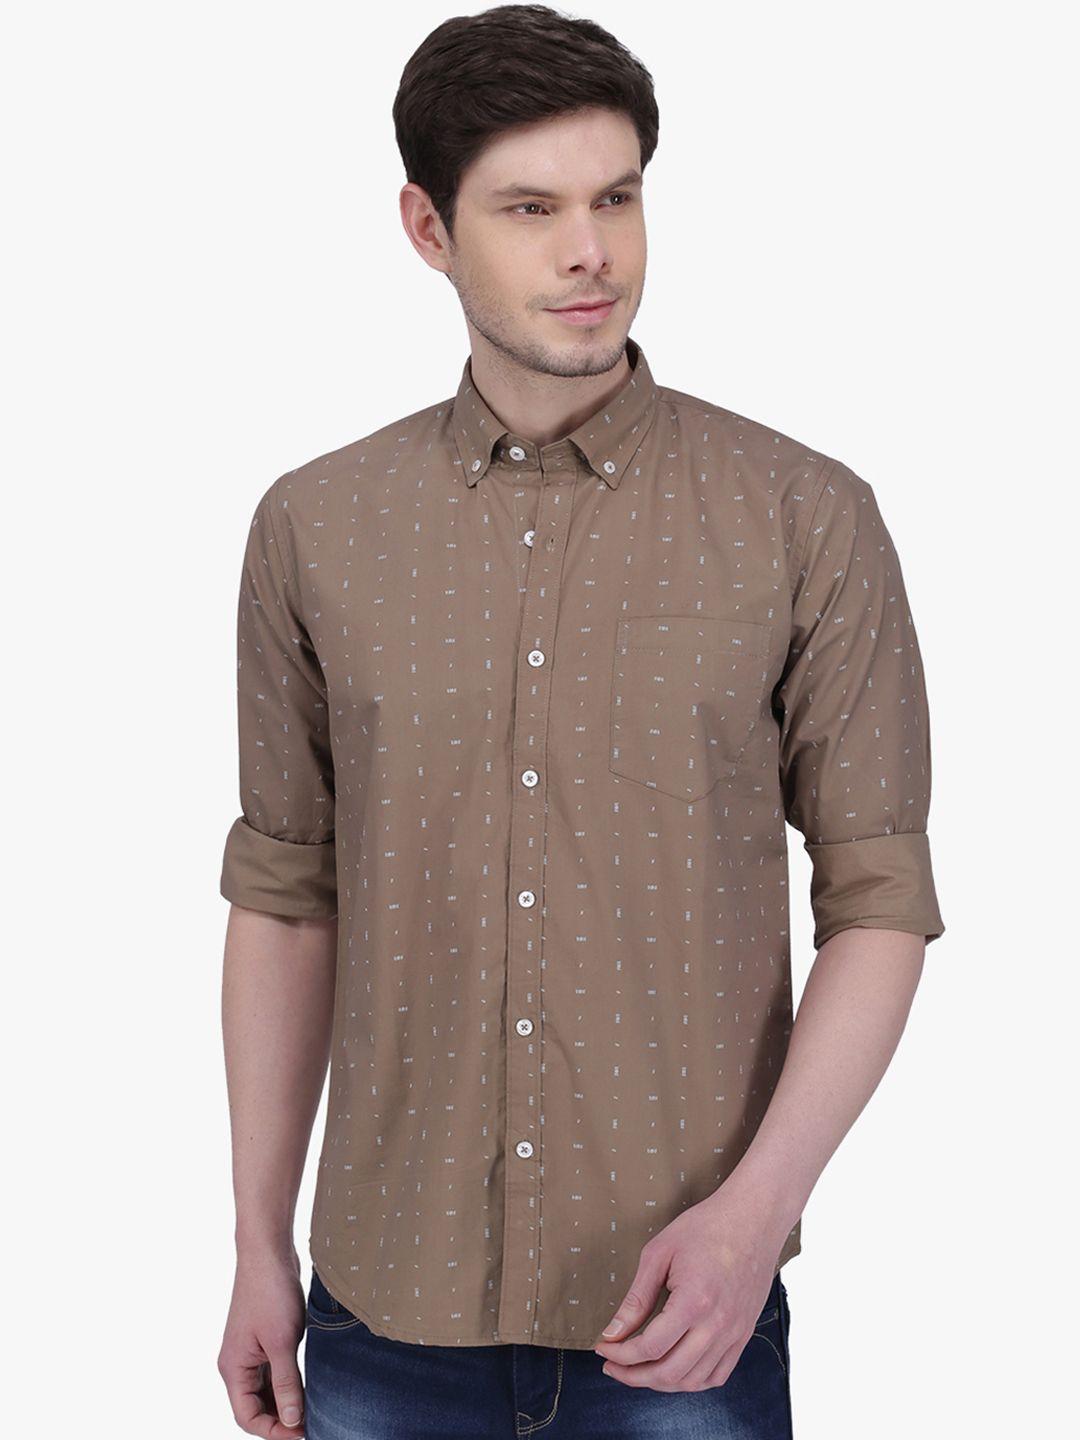 southbay men brown smart slim fit printed casual shirt